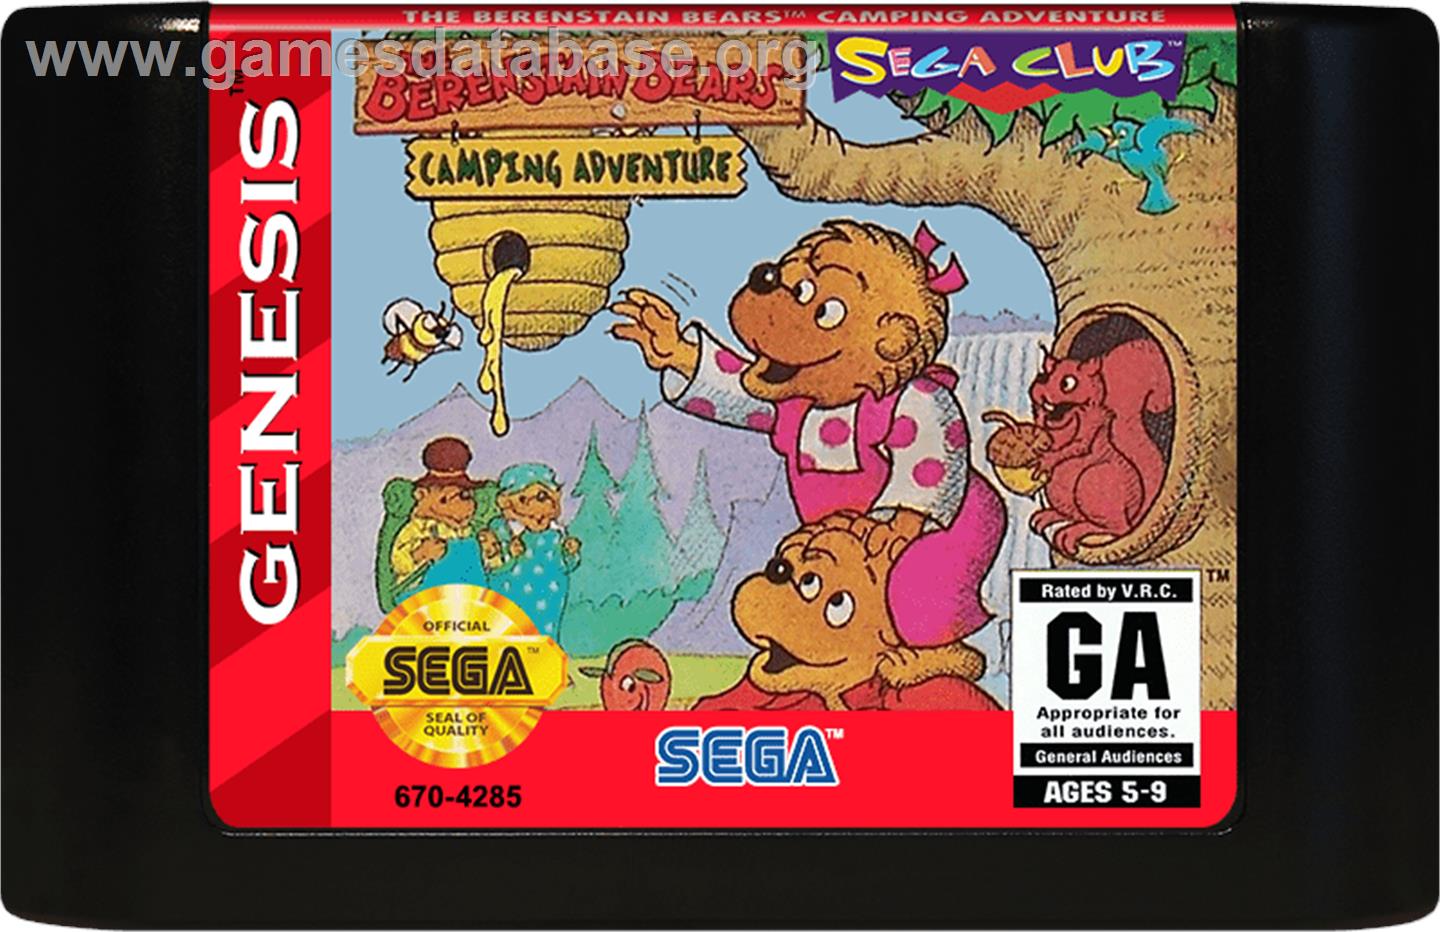 Berenstain Bears' Camping Adventure, The - Sega Genesis - Artwork - Cartridge